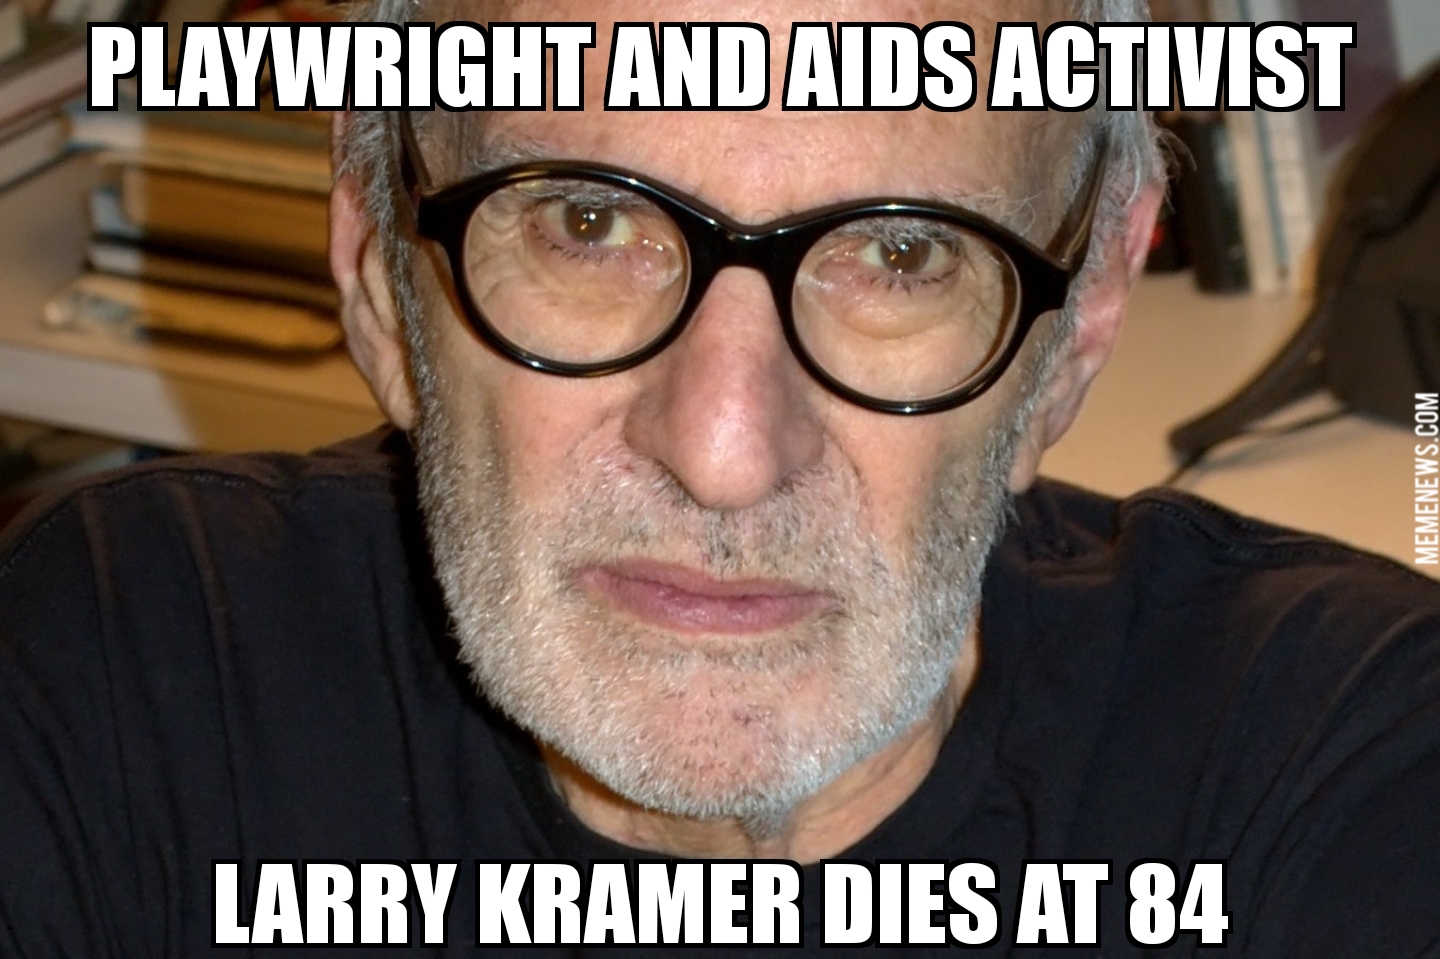 Larry Kramer dies